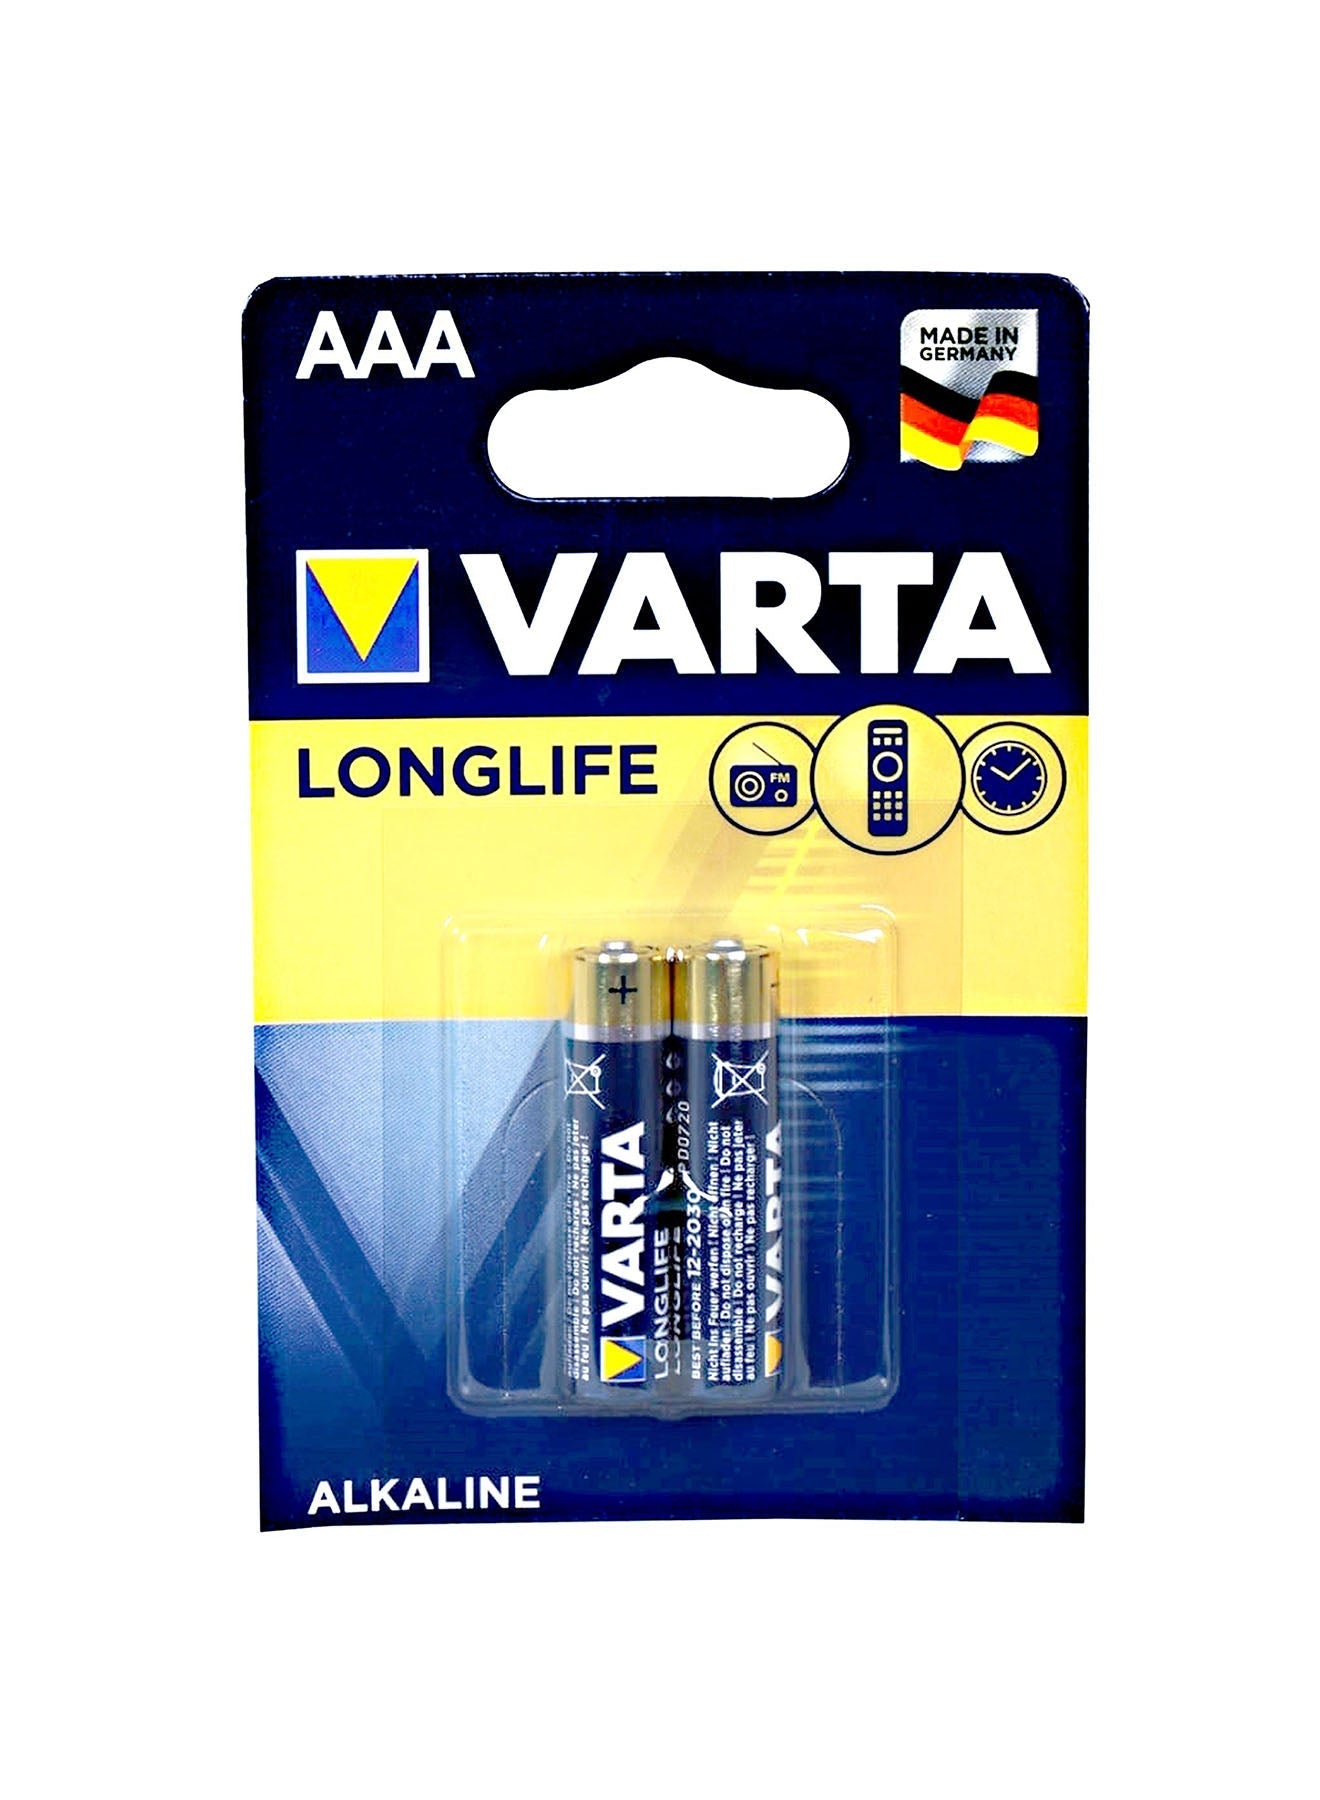 Varta Long Life AAA 2 Unit Alkaline Battery 15 V Value Pack of 4 